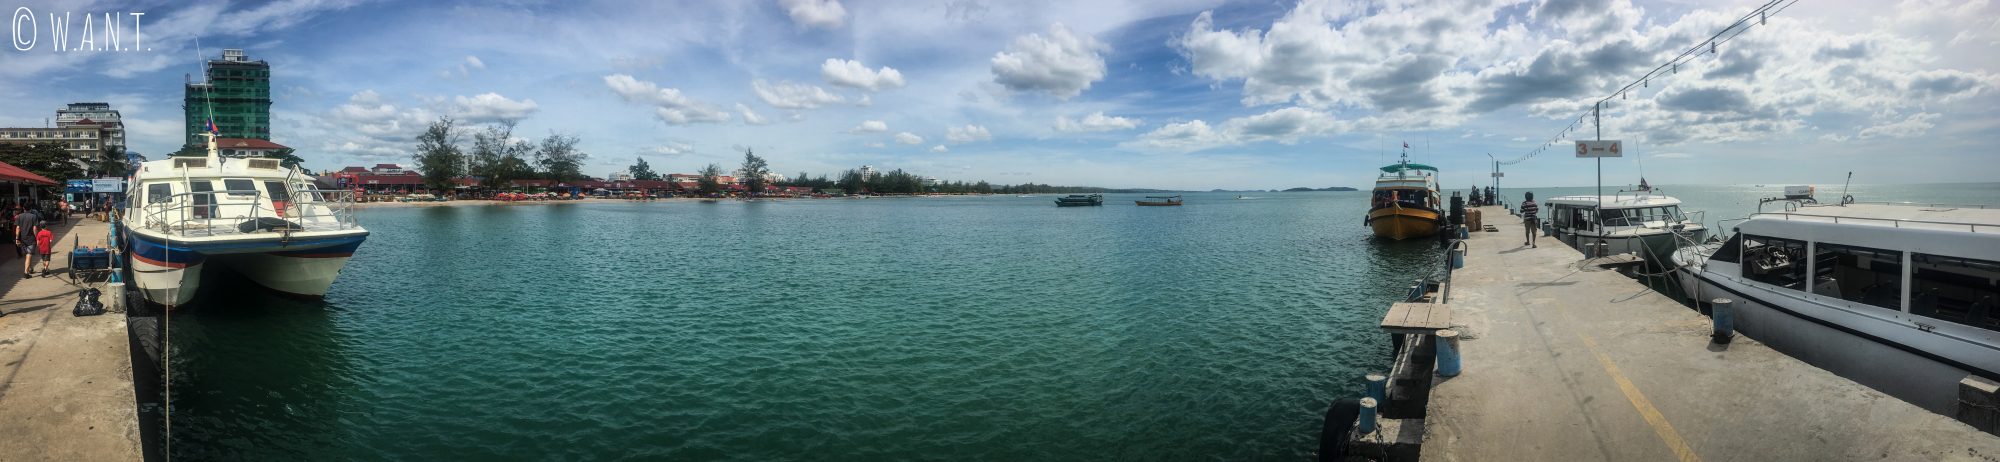 Panorama sur le port de Sihanoukville